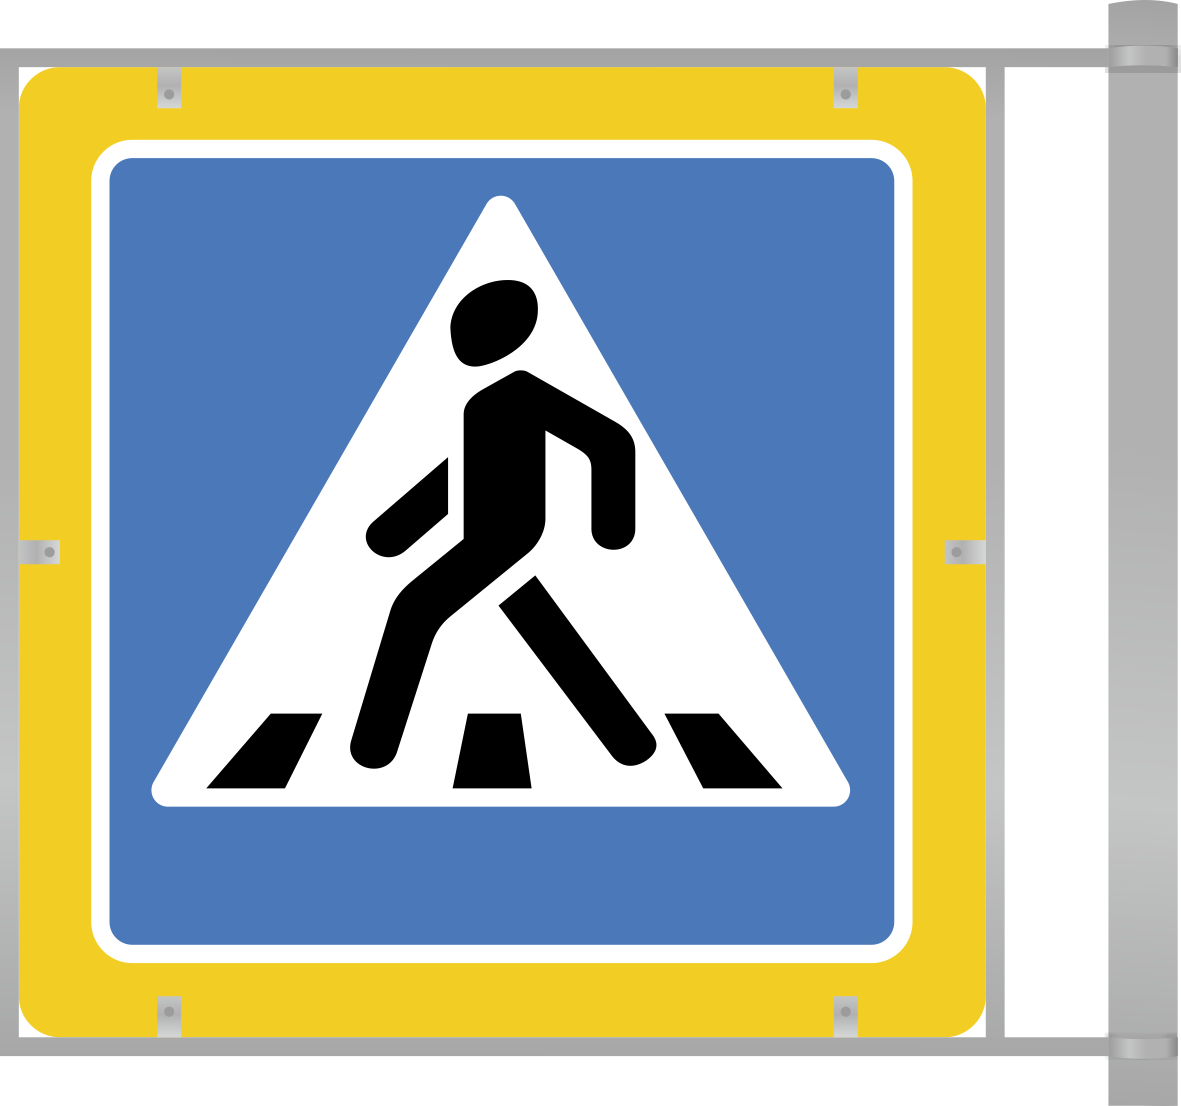 Каркасный дорожный знак 5.19.1/5.19.2 (двухсторонний). Пешеходный переход на флуоресцентном фоне. Оцинкованный металл на каркасе из крашенной трубы.